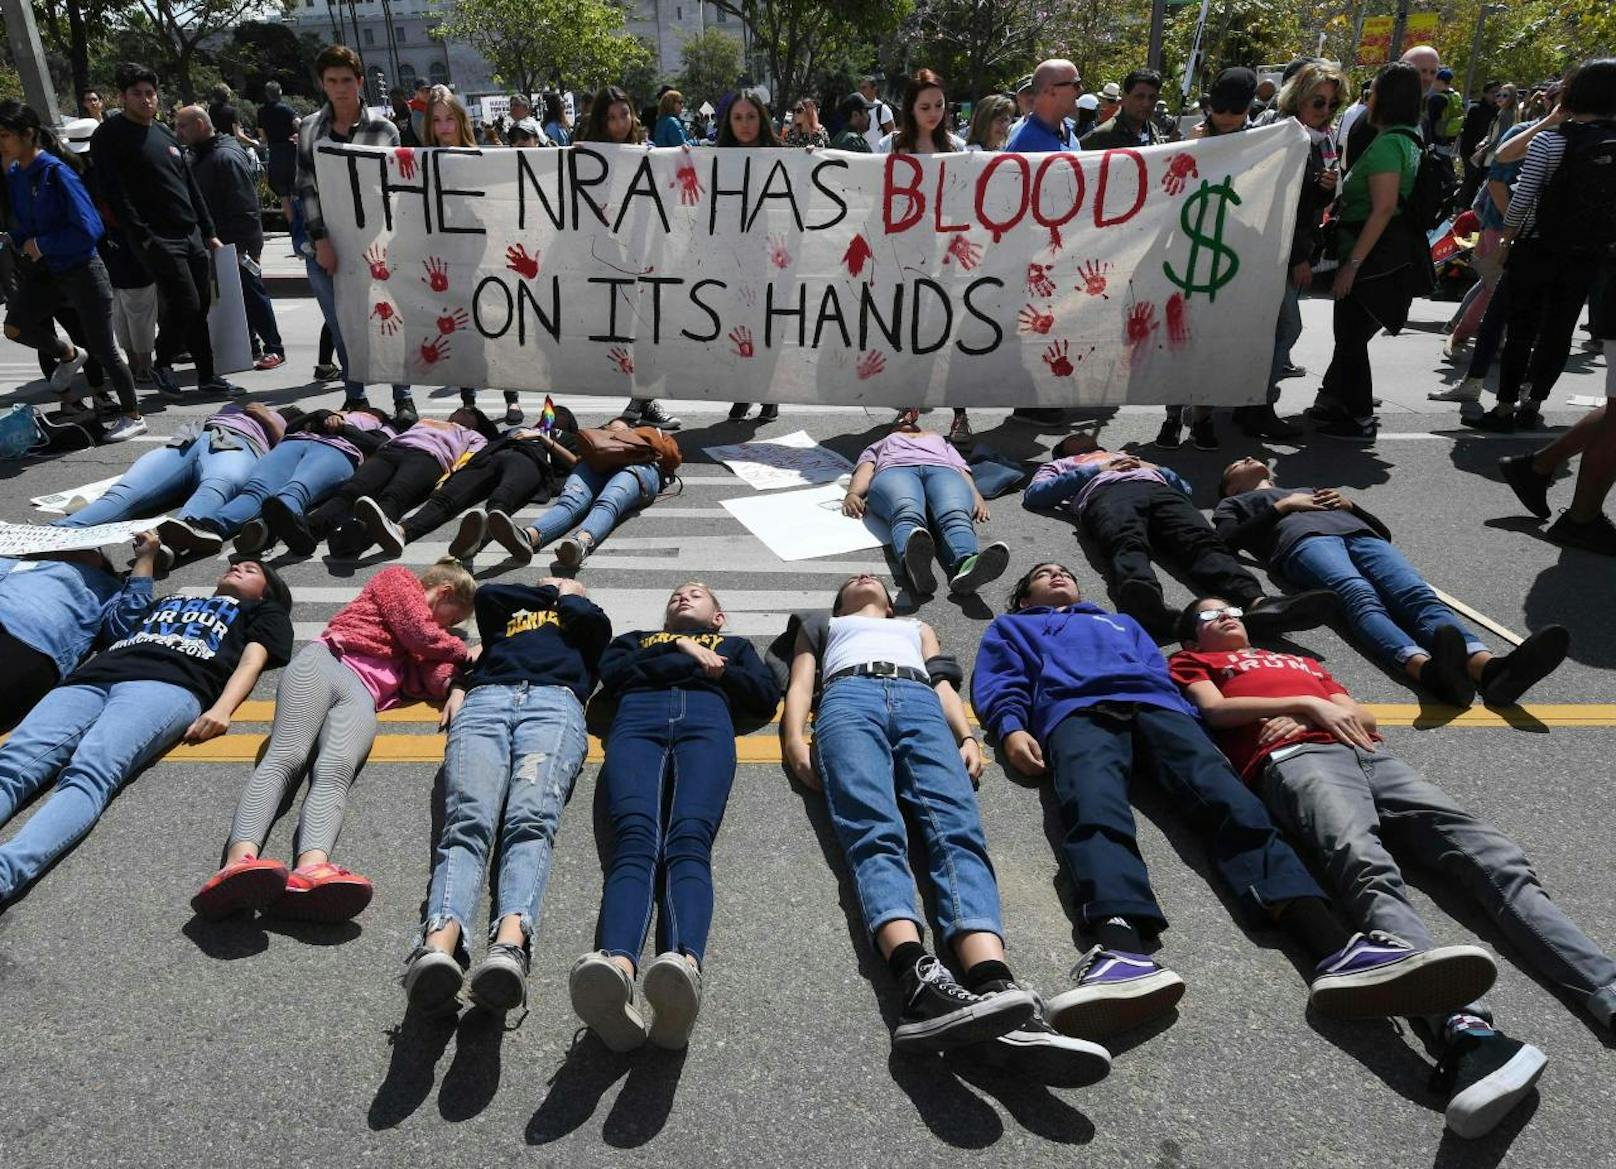 Vor allem viele Jugendliche und Schüler setzten ein Zeichen und forderten strengere Waffengesetze.